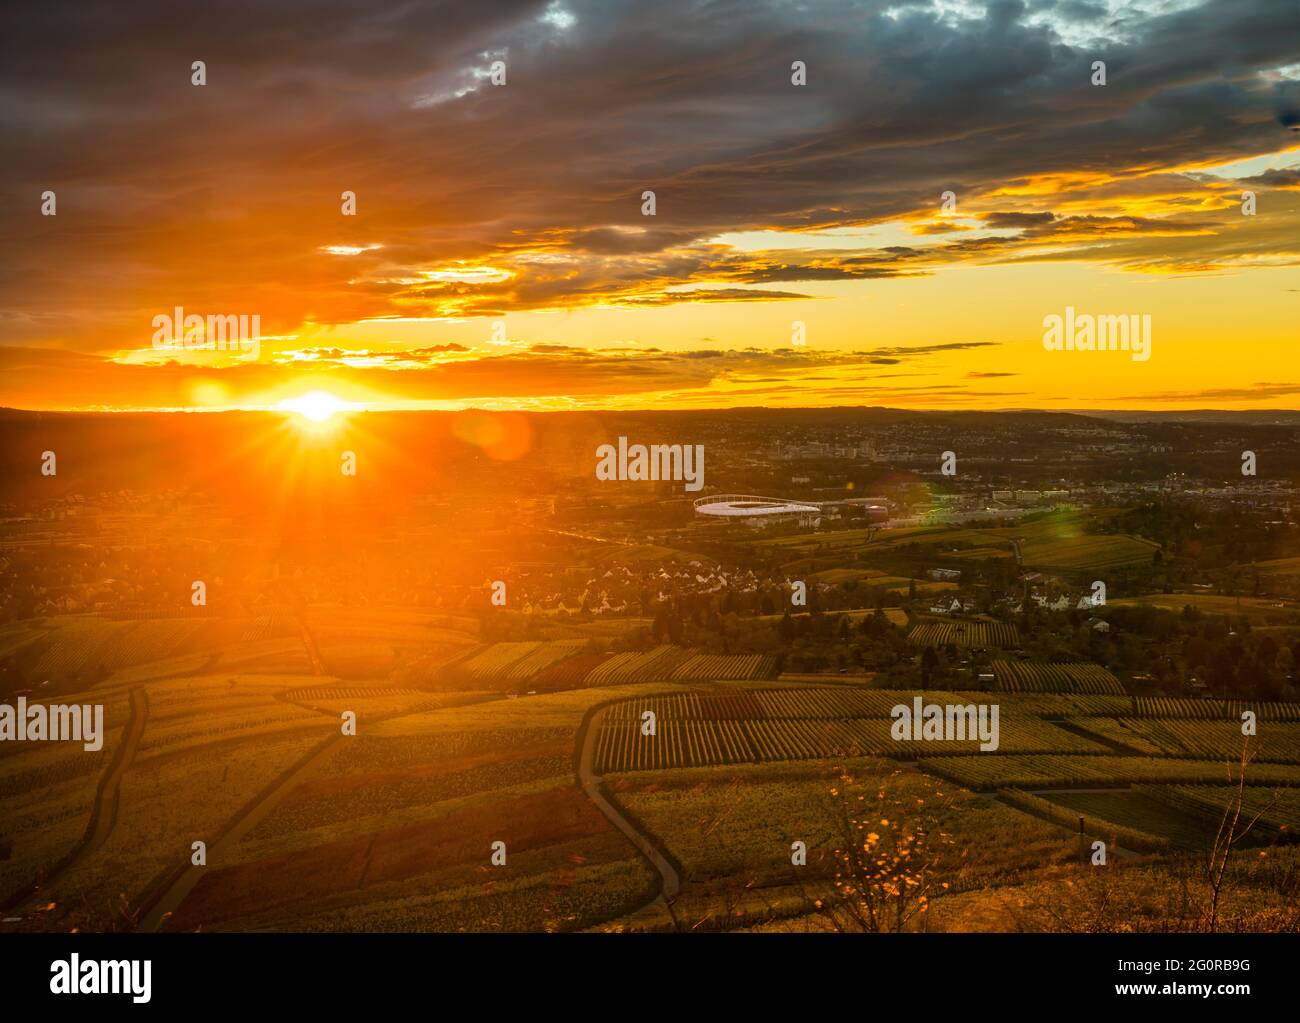 Allemagne, maisons de la ville de Stuttgart et horizon au coucher du soleil, vue aérienne au-dessus du paysage urbain et arène derrière le paysage des vignobles Banque D'Images